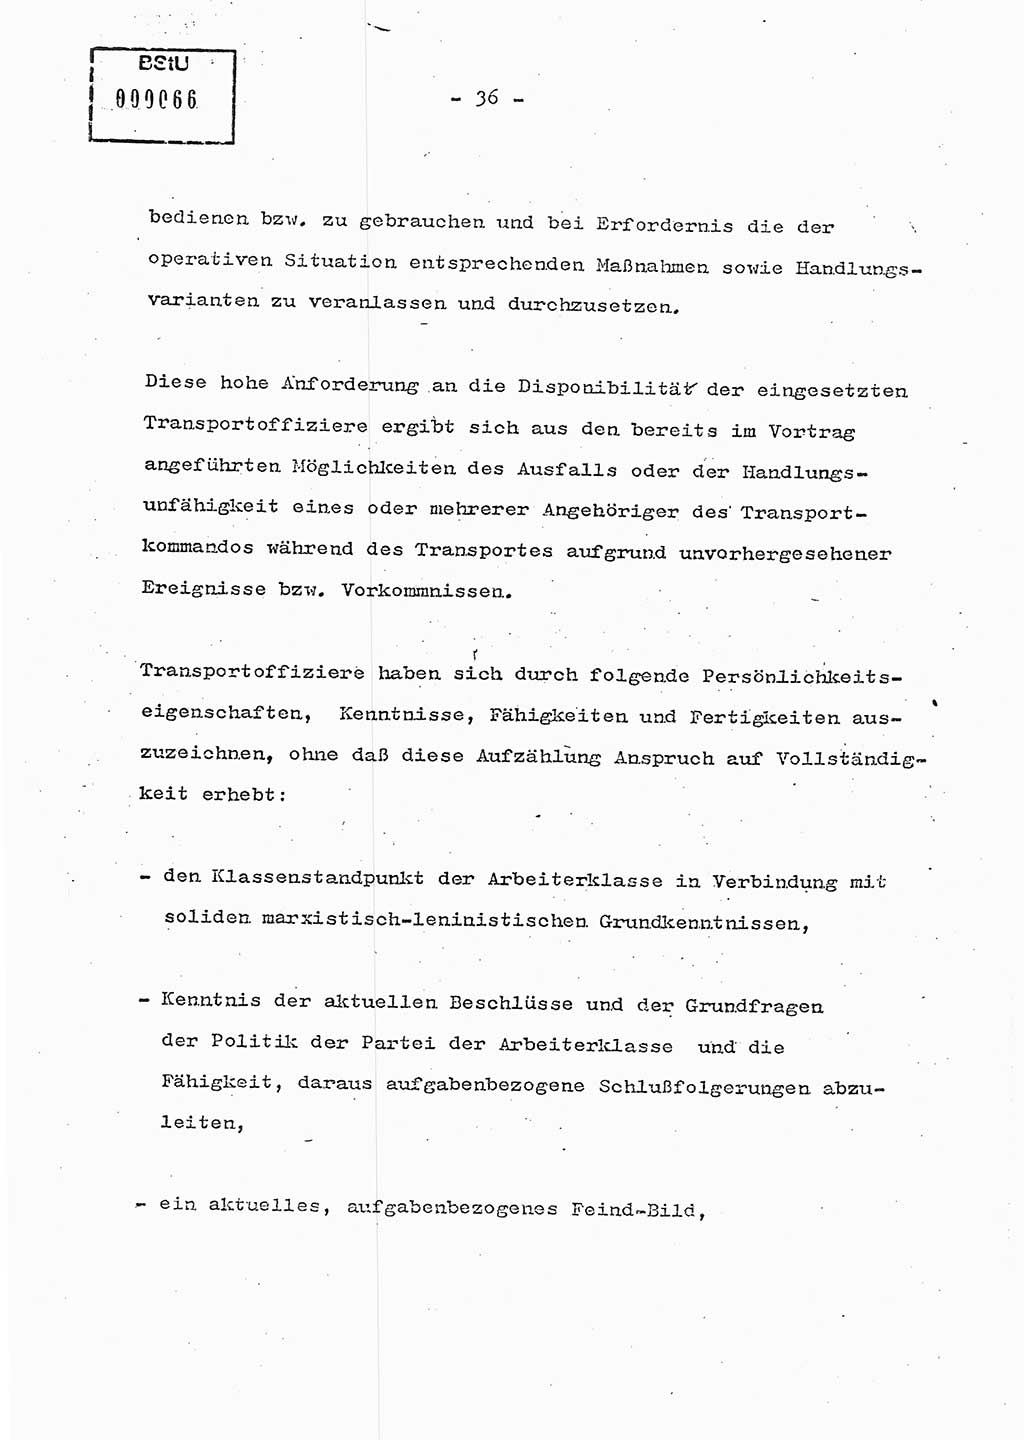 Schulungsmaterial Exemplar-Nr.: 7, Ministerium für Staatssicherheit [Deutsche Demokratische Republik (DDR)], Abteilung (Abt.) ⅩⅣ, Berlin 1986, Seite 36 (Sch.-Mat. Expl. 7 MfS DDR Abt. ⅩⅣ /86 1986, S. 36)